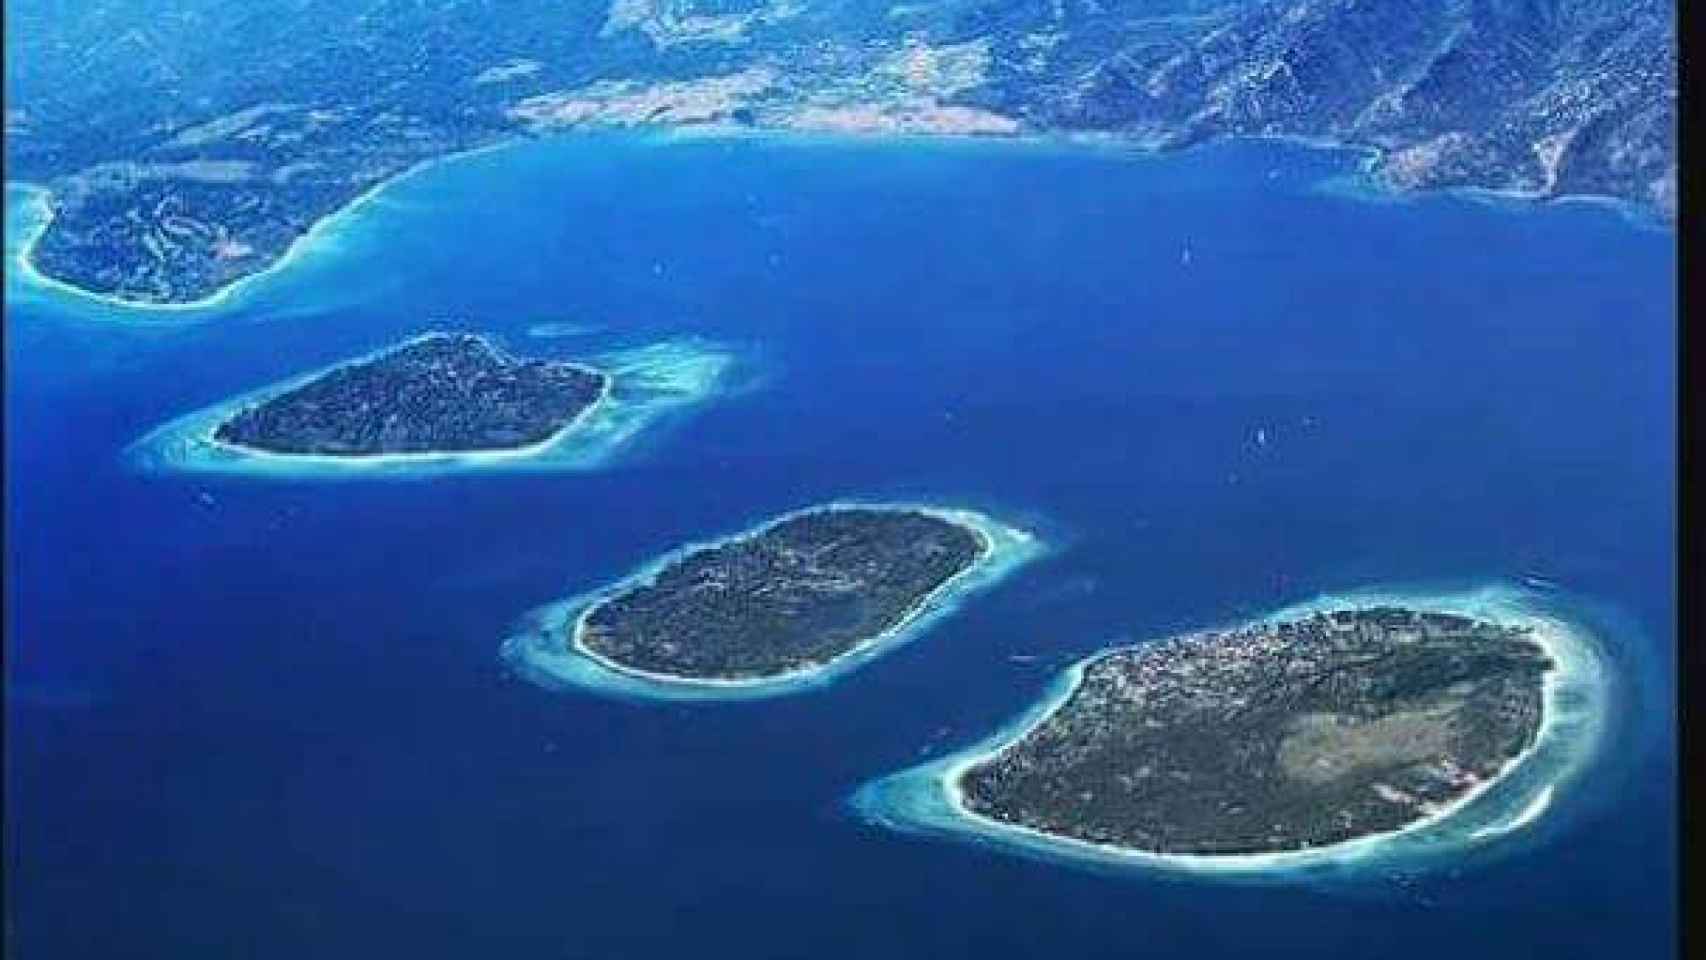 Las islas Gili Trawangan, Gili Meno y Gili Air , situadas en la costa noroeste de Lombok, Indonesia.